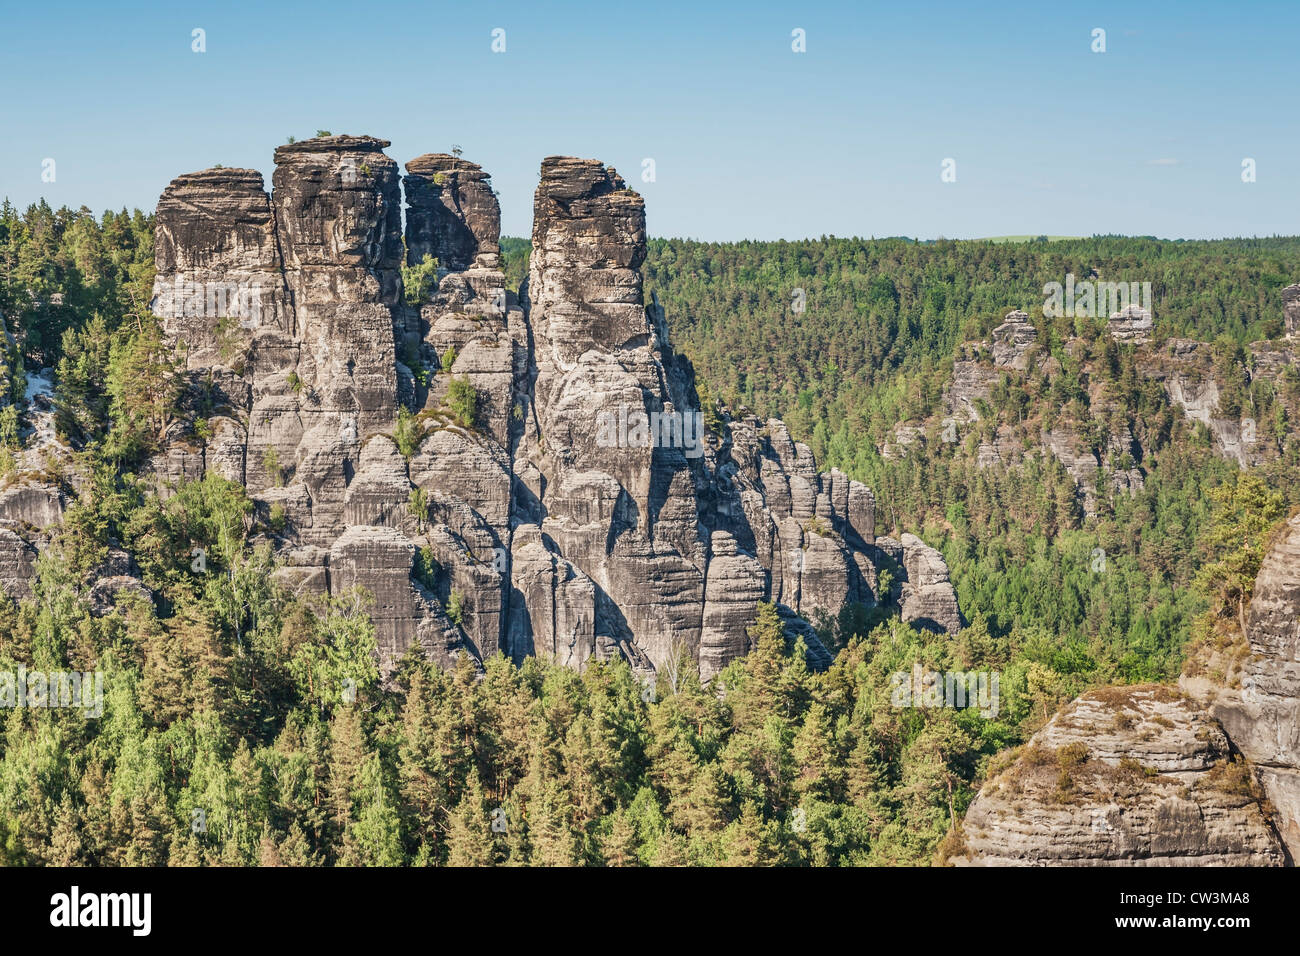 Vue de la soi-disant Goose Rocks (Gansfelsen), municipalité de Lohmen, la Suisse Saxonne, près de Dresde, Saxe, Allemagne, Europe Banque D'Images